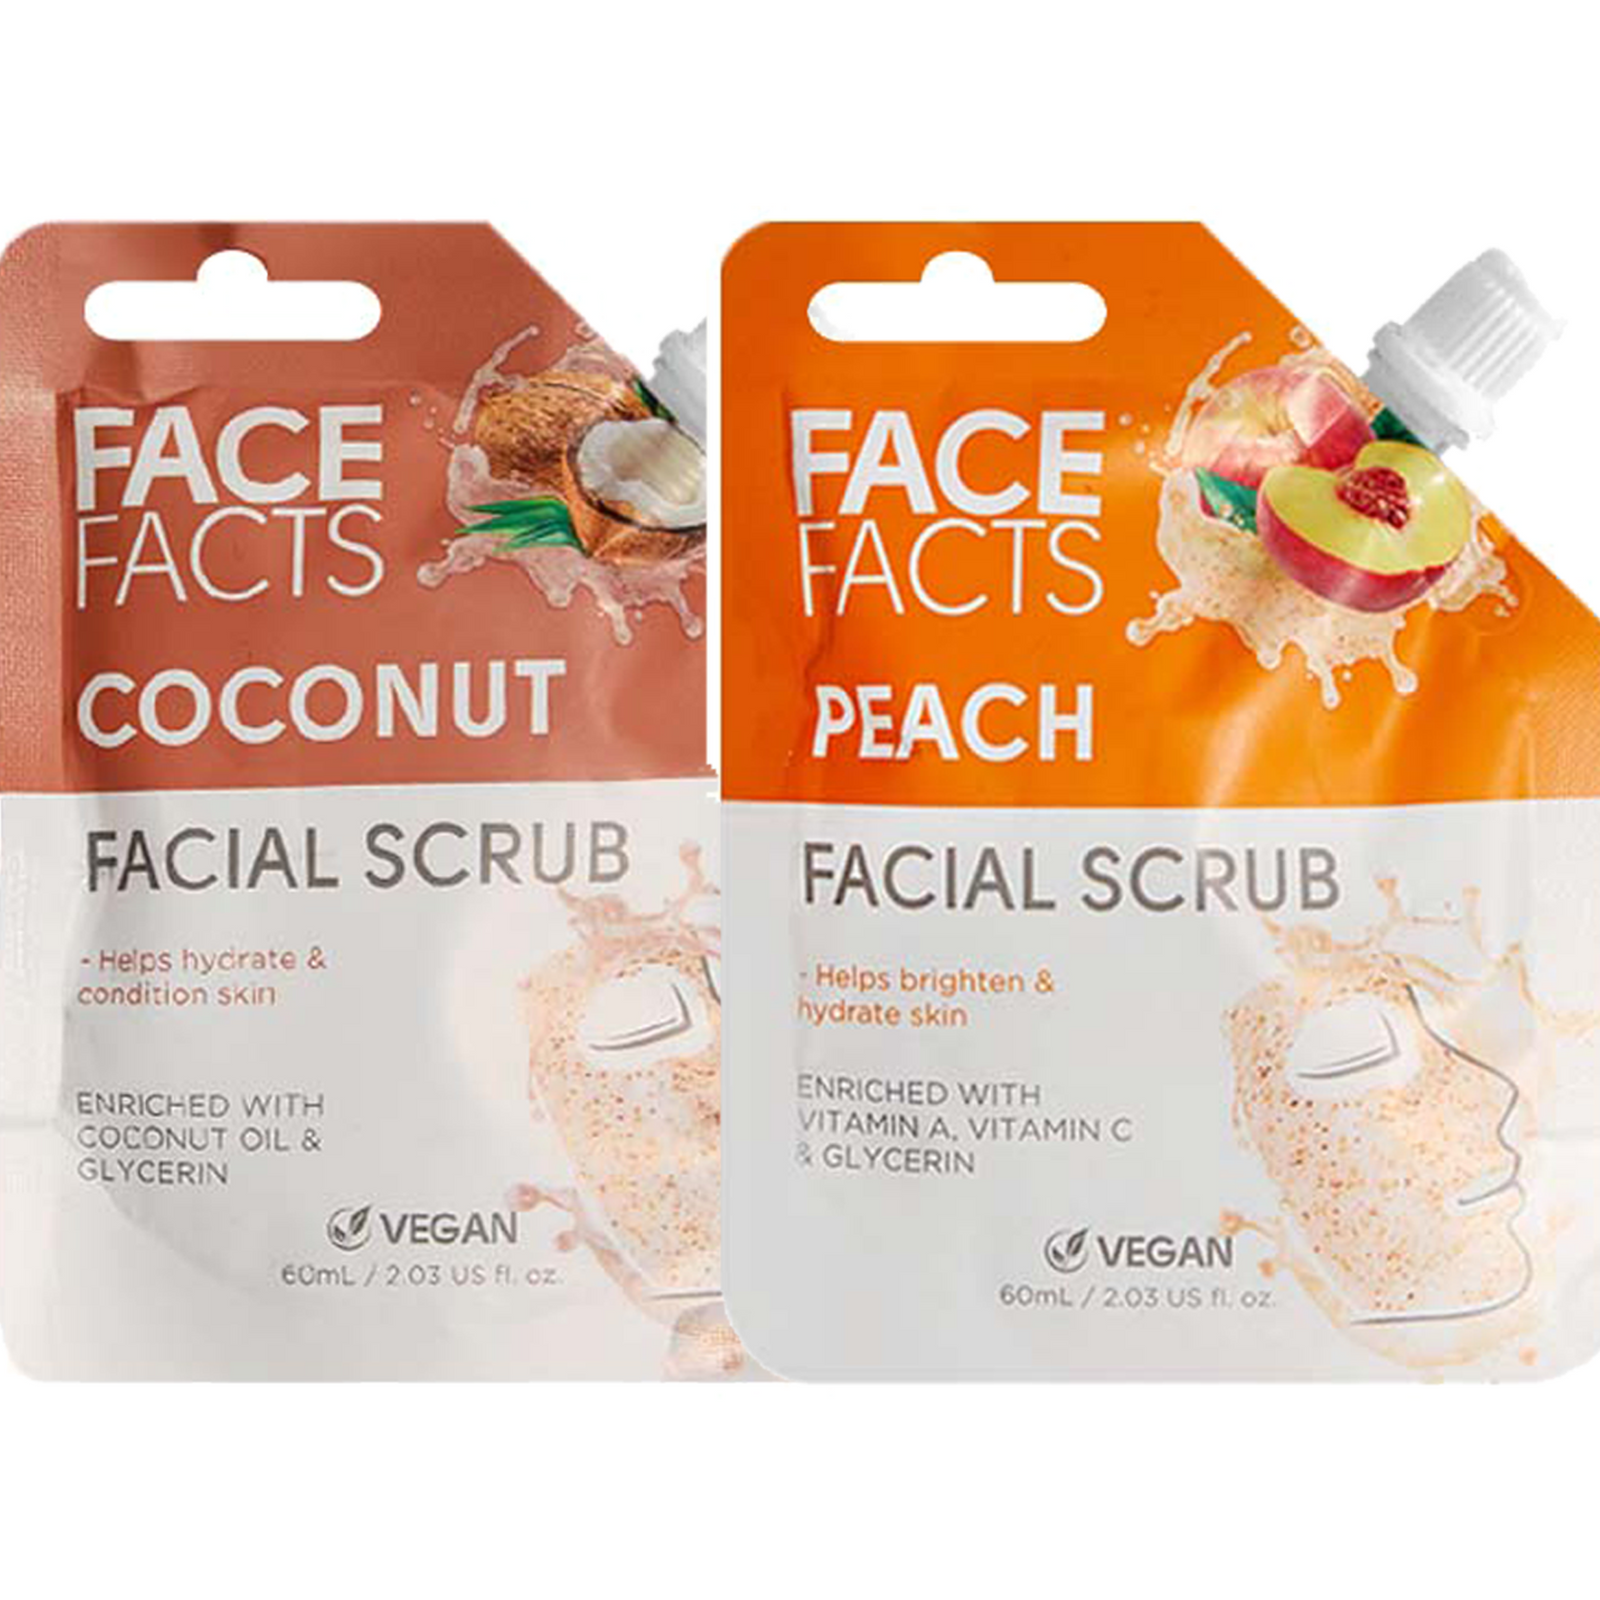 Face Facts Facial Scrub 60ml